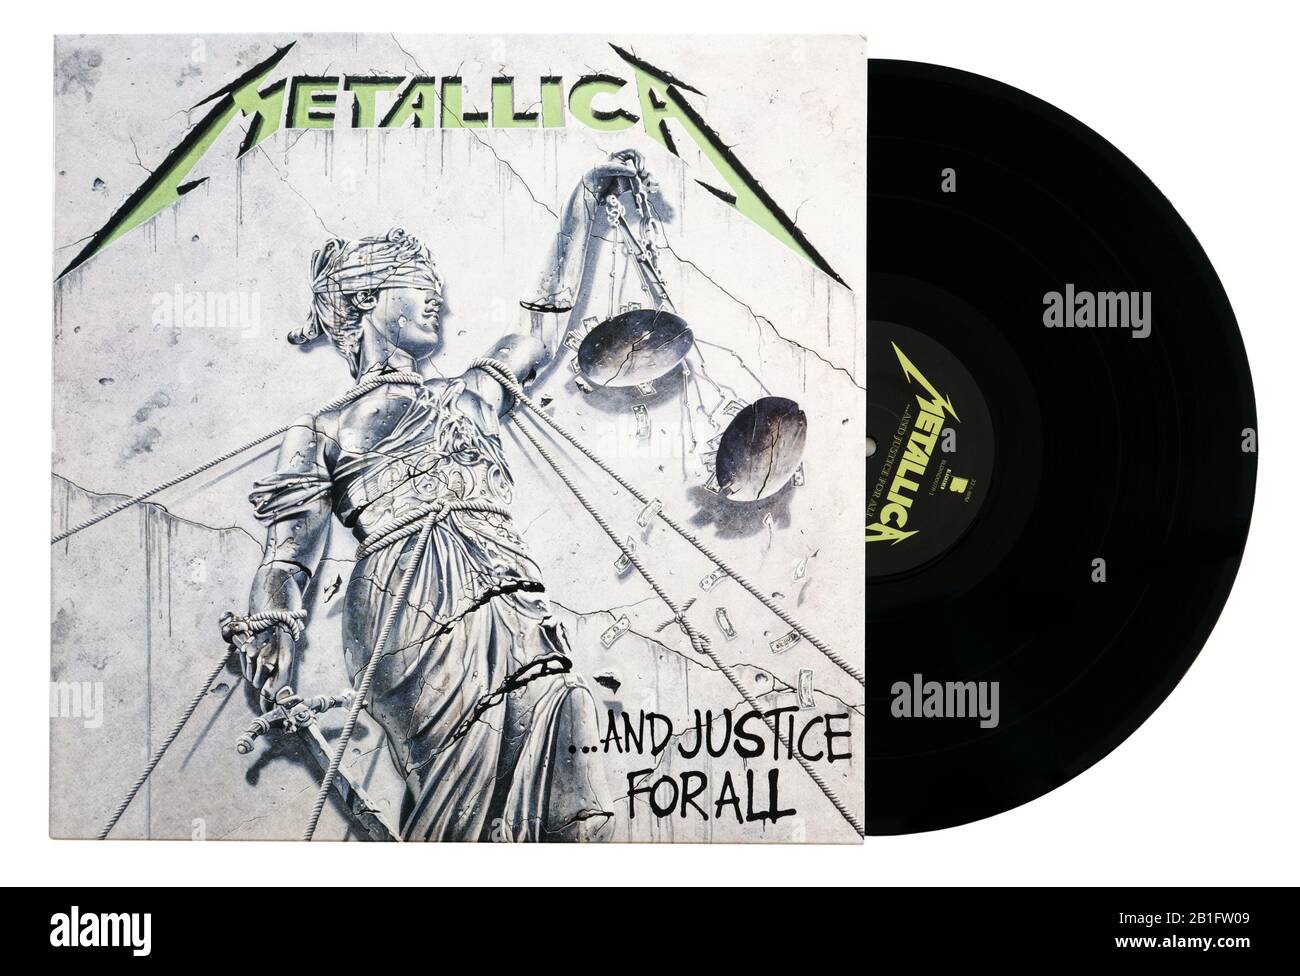 Album classico heavy metal E Justice For All di metallica su vinile Foto  stock - Alamy